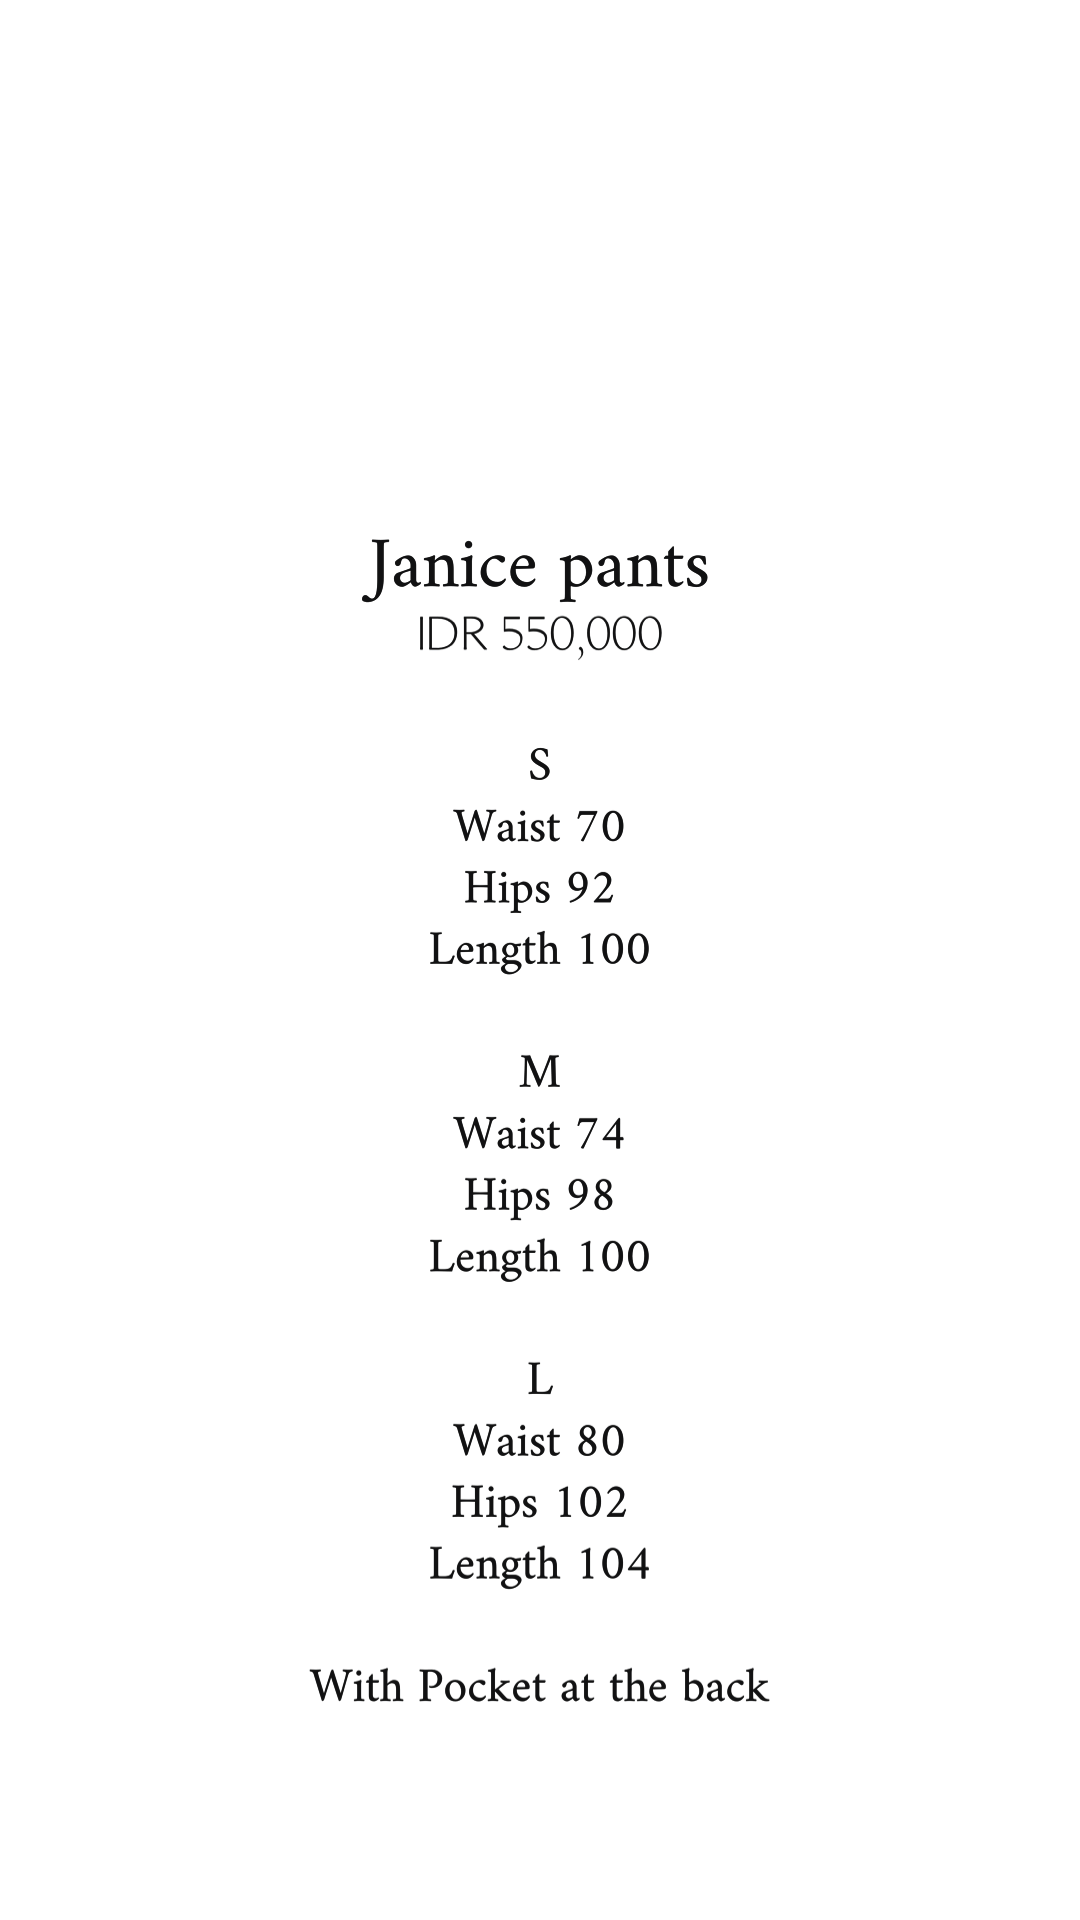 JANICE PANTS